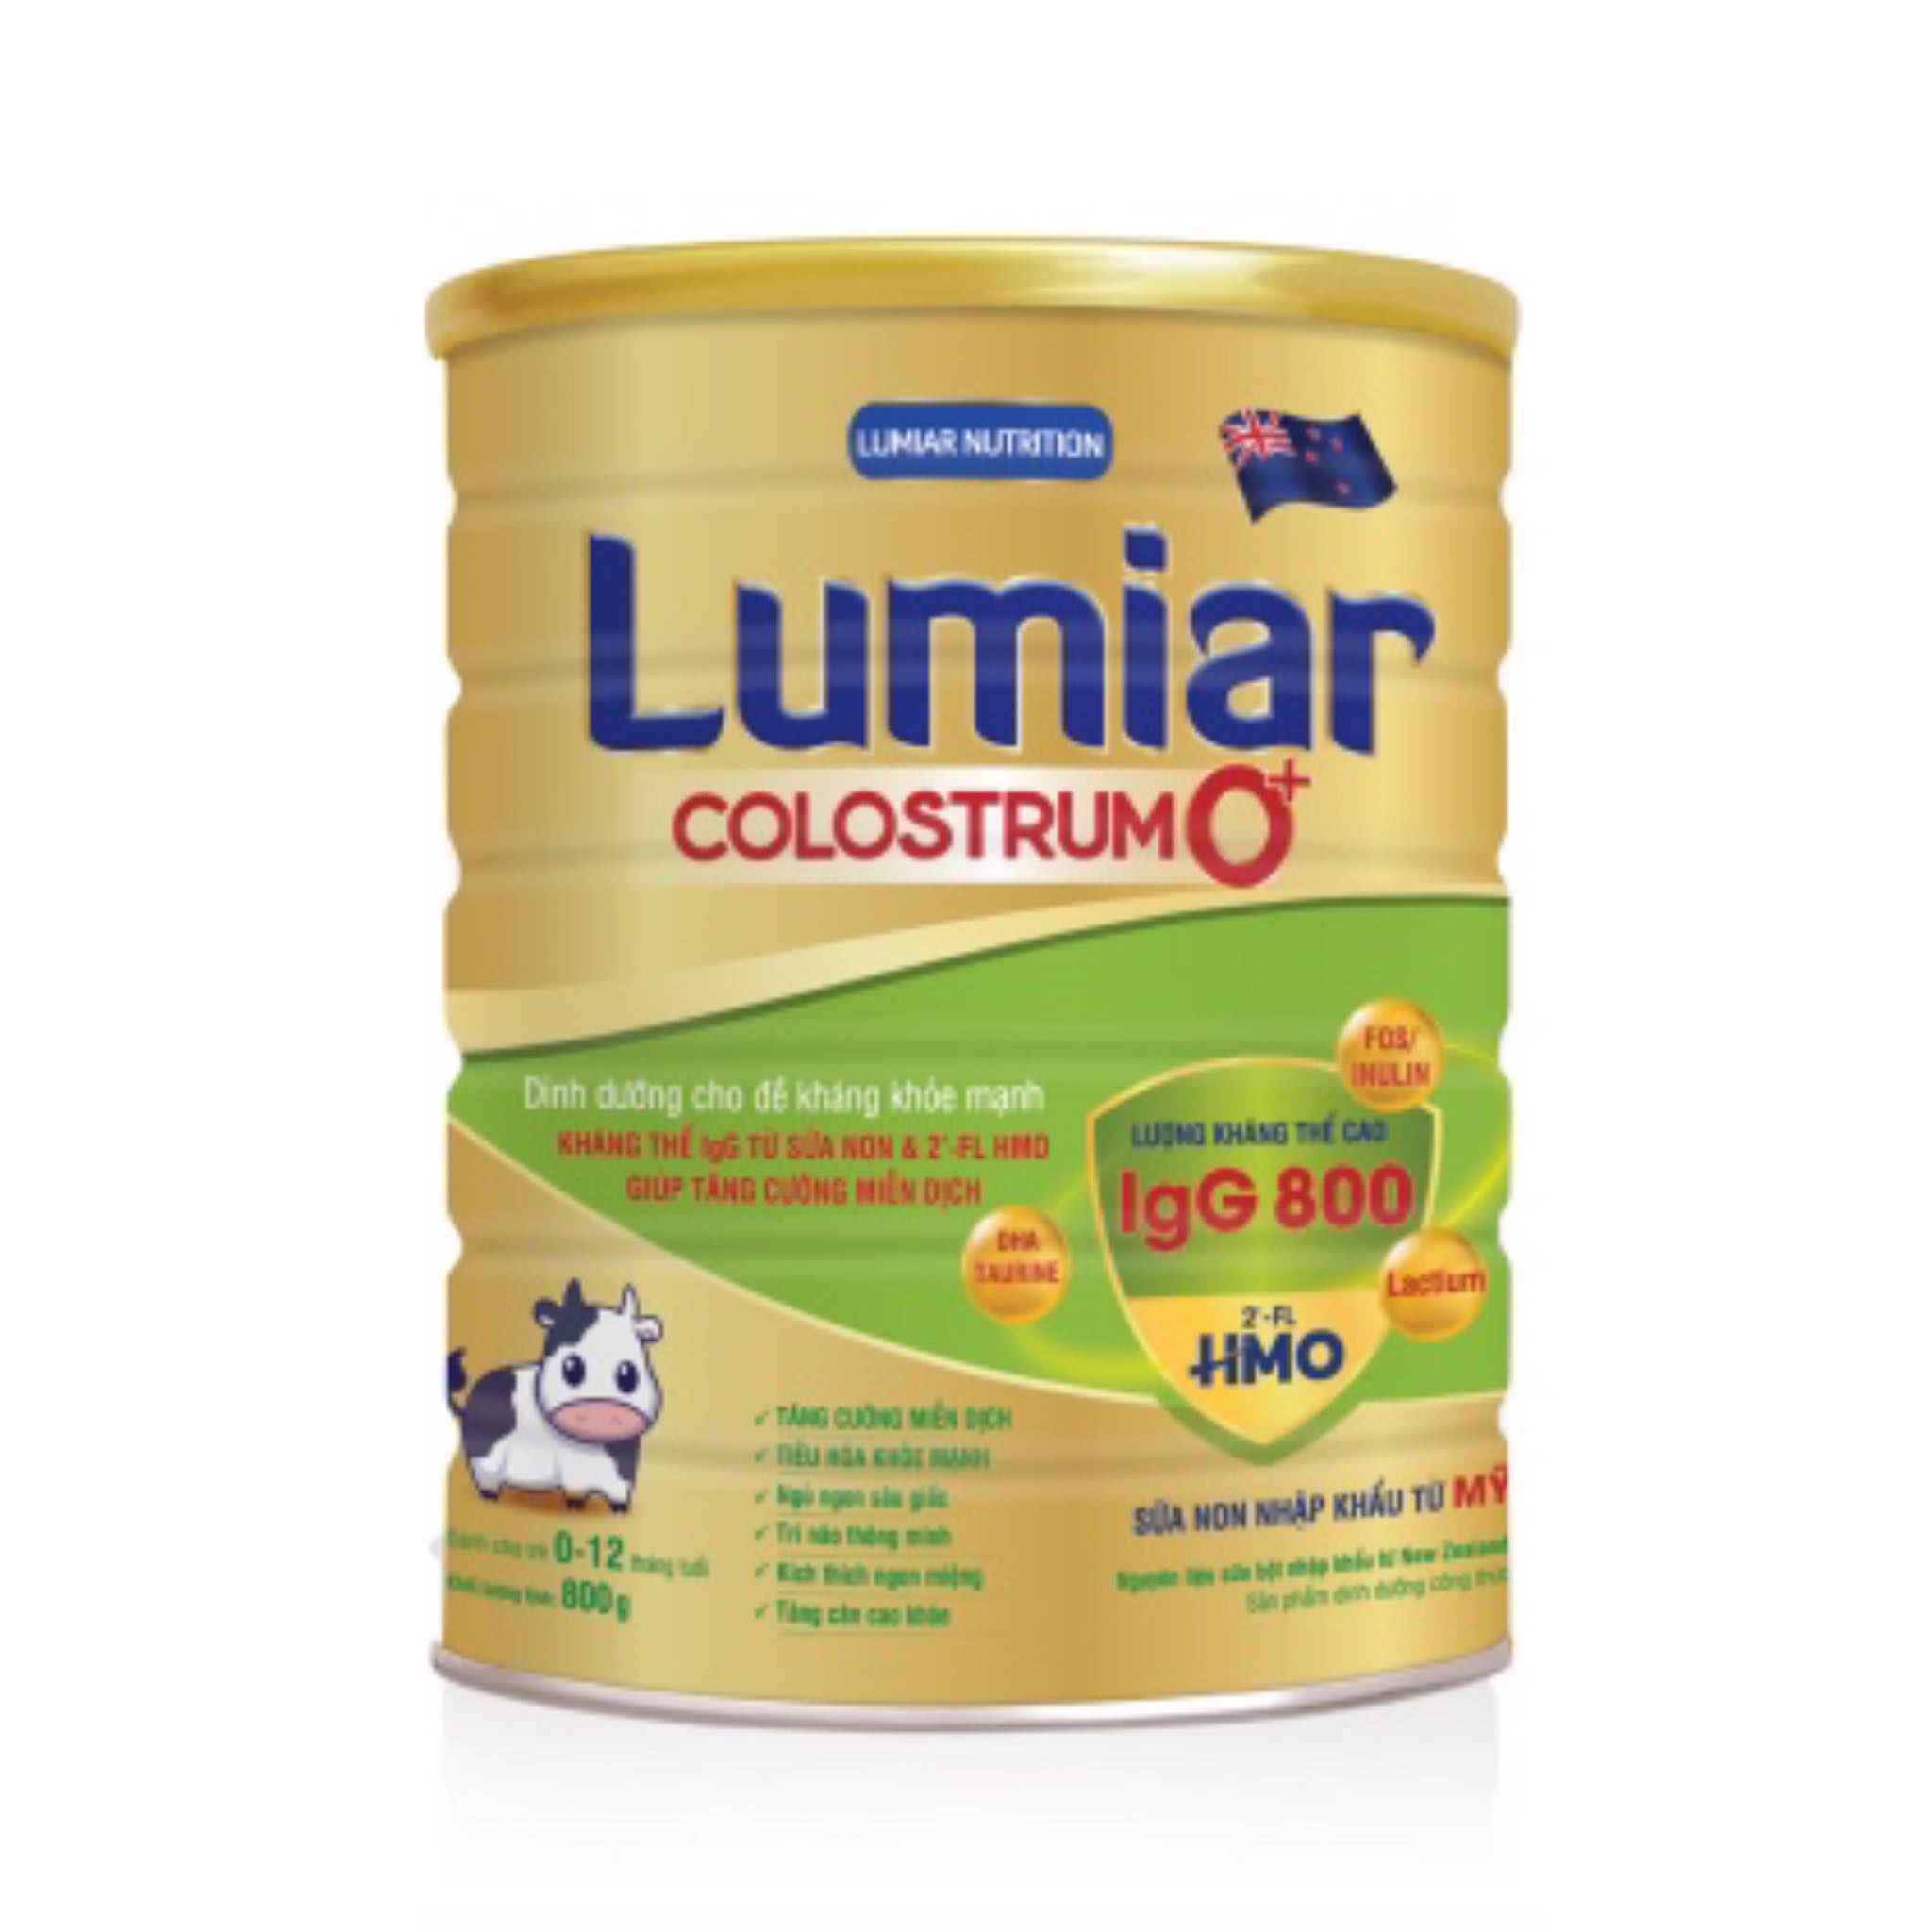 Sữa bột Lumiar Colostrum 0+ 800g - Dinh dưỡng cho đề kháng khỏe mạnh, kháng thể IgG từ sữa non &amp; 2′-FL HMO giúp tăng cường miễn dịch.